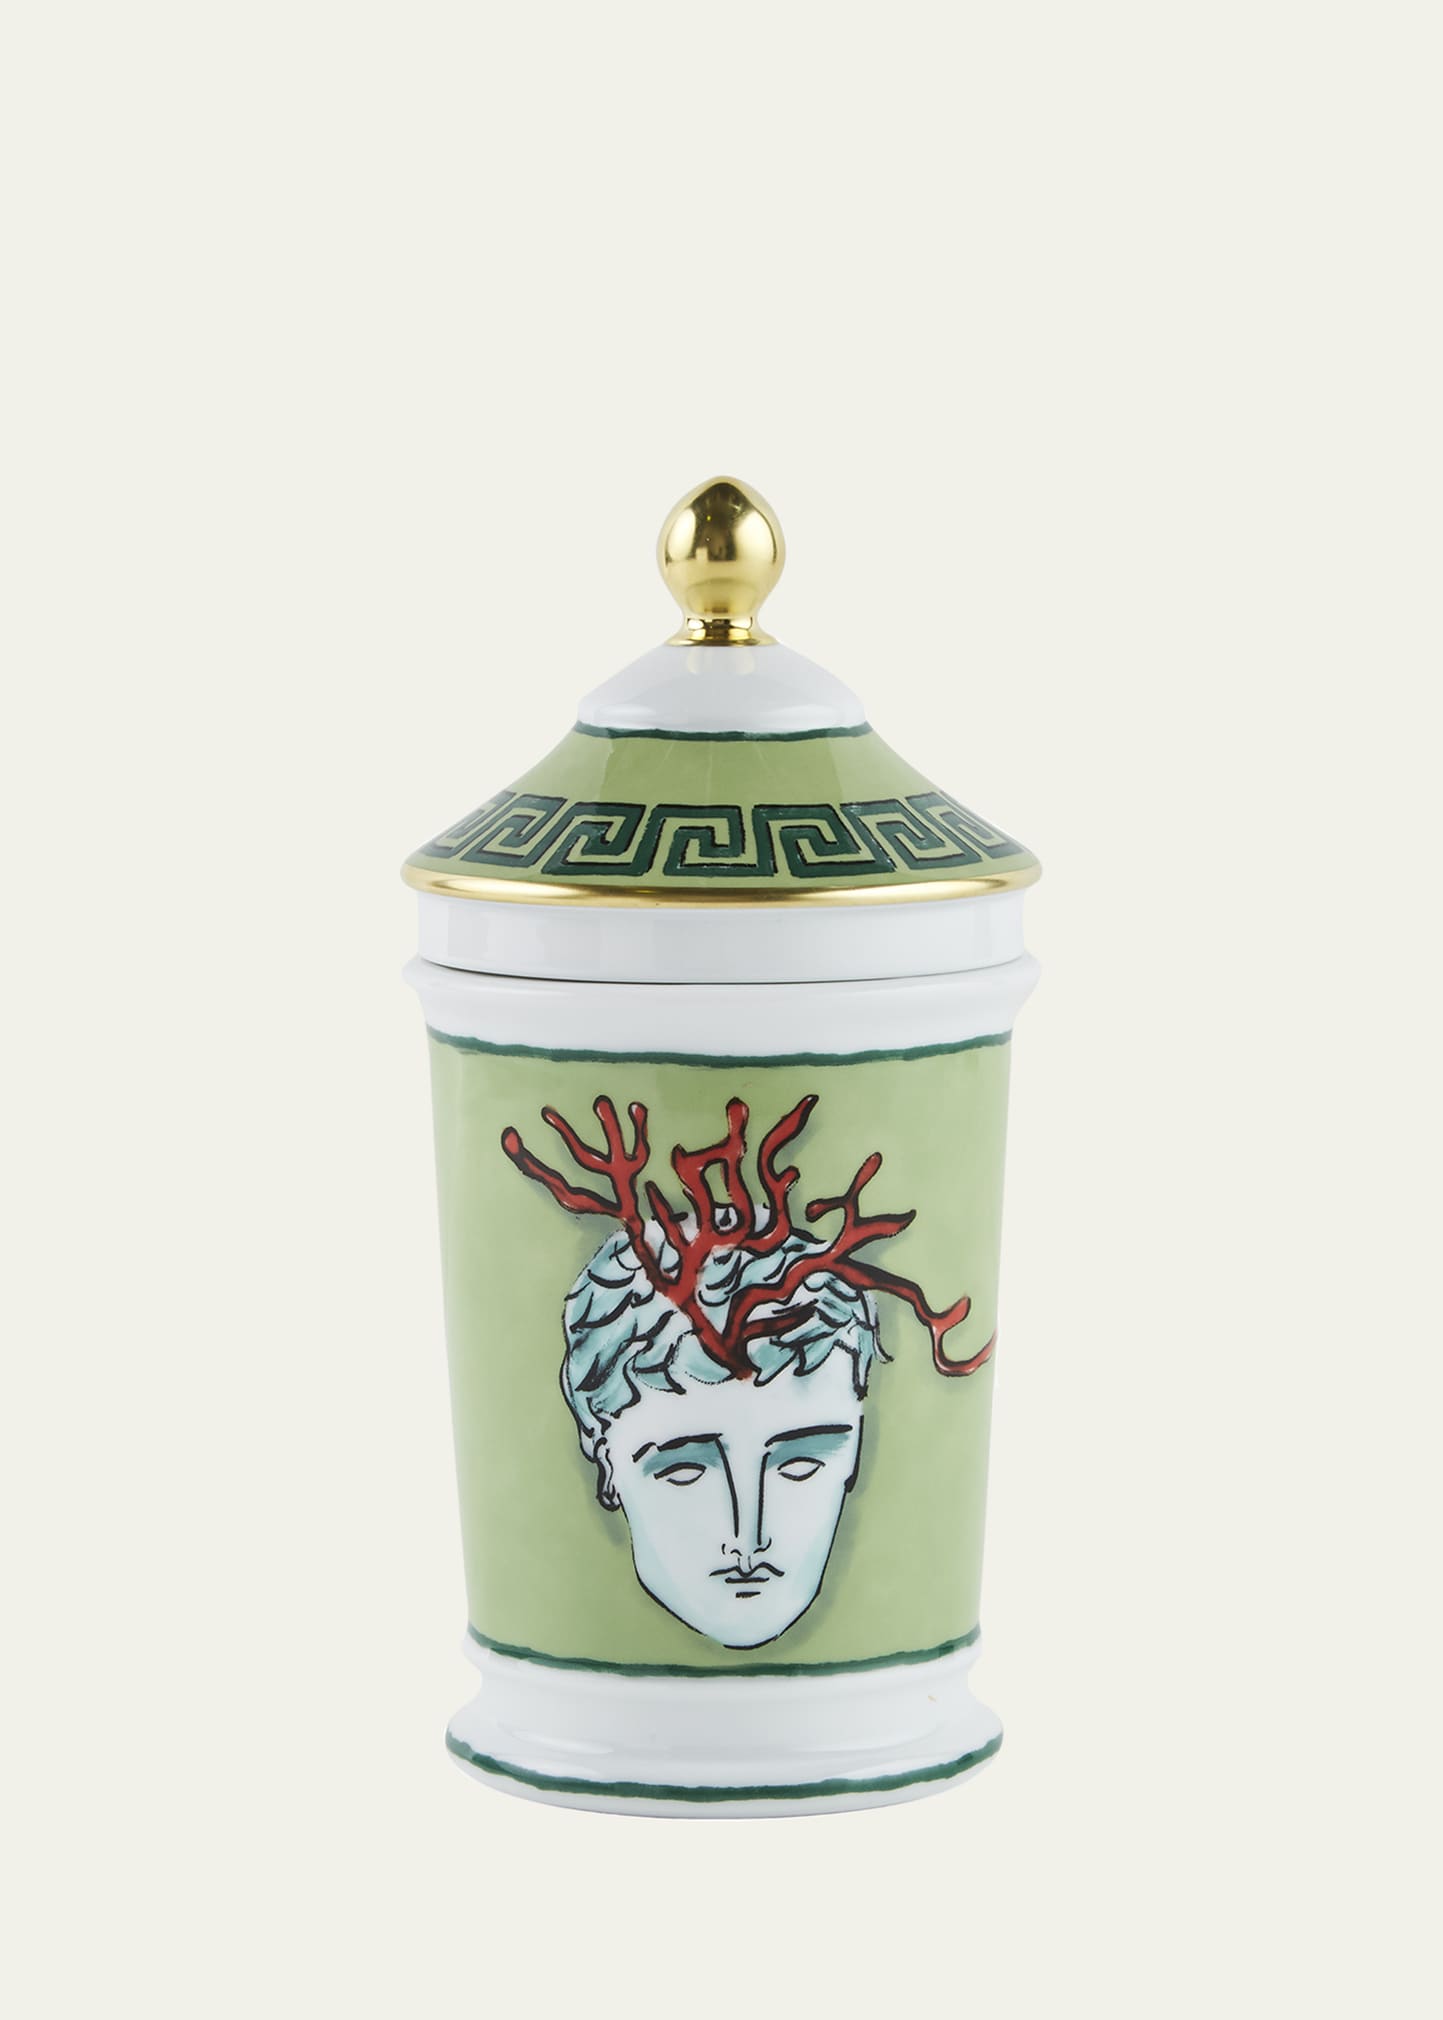 Ginori 1735 Neptune's Voyage Pharmacy Jar, Green